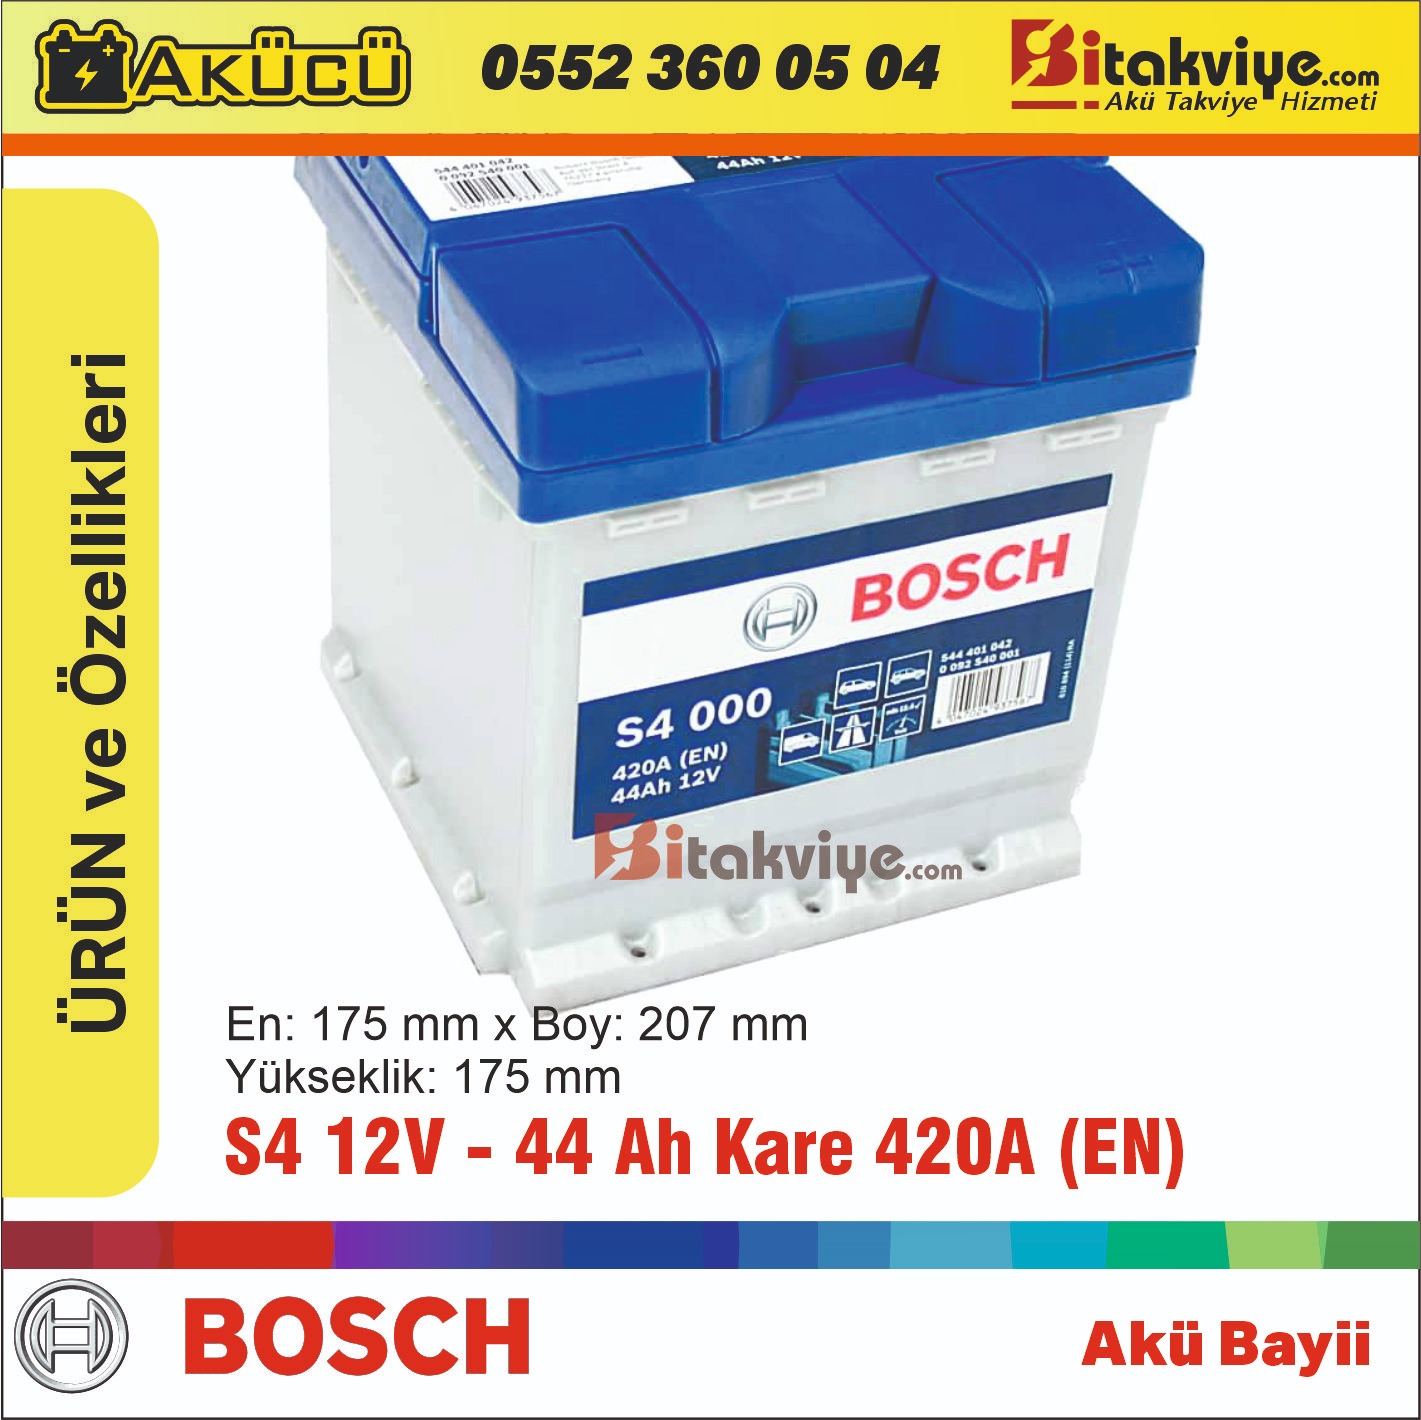 Bosch S4 44Ah (Kare Akü) 420A (EN)